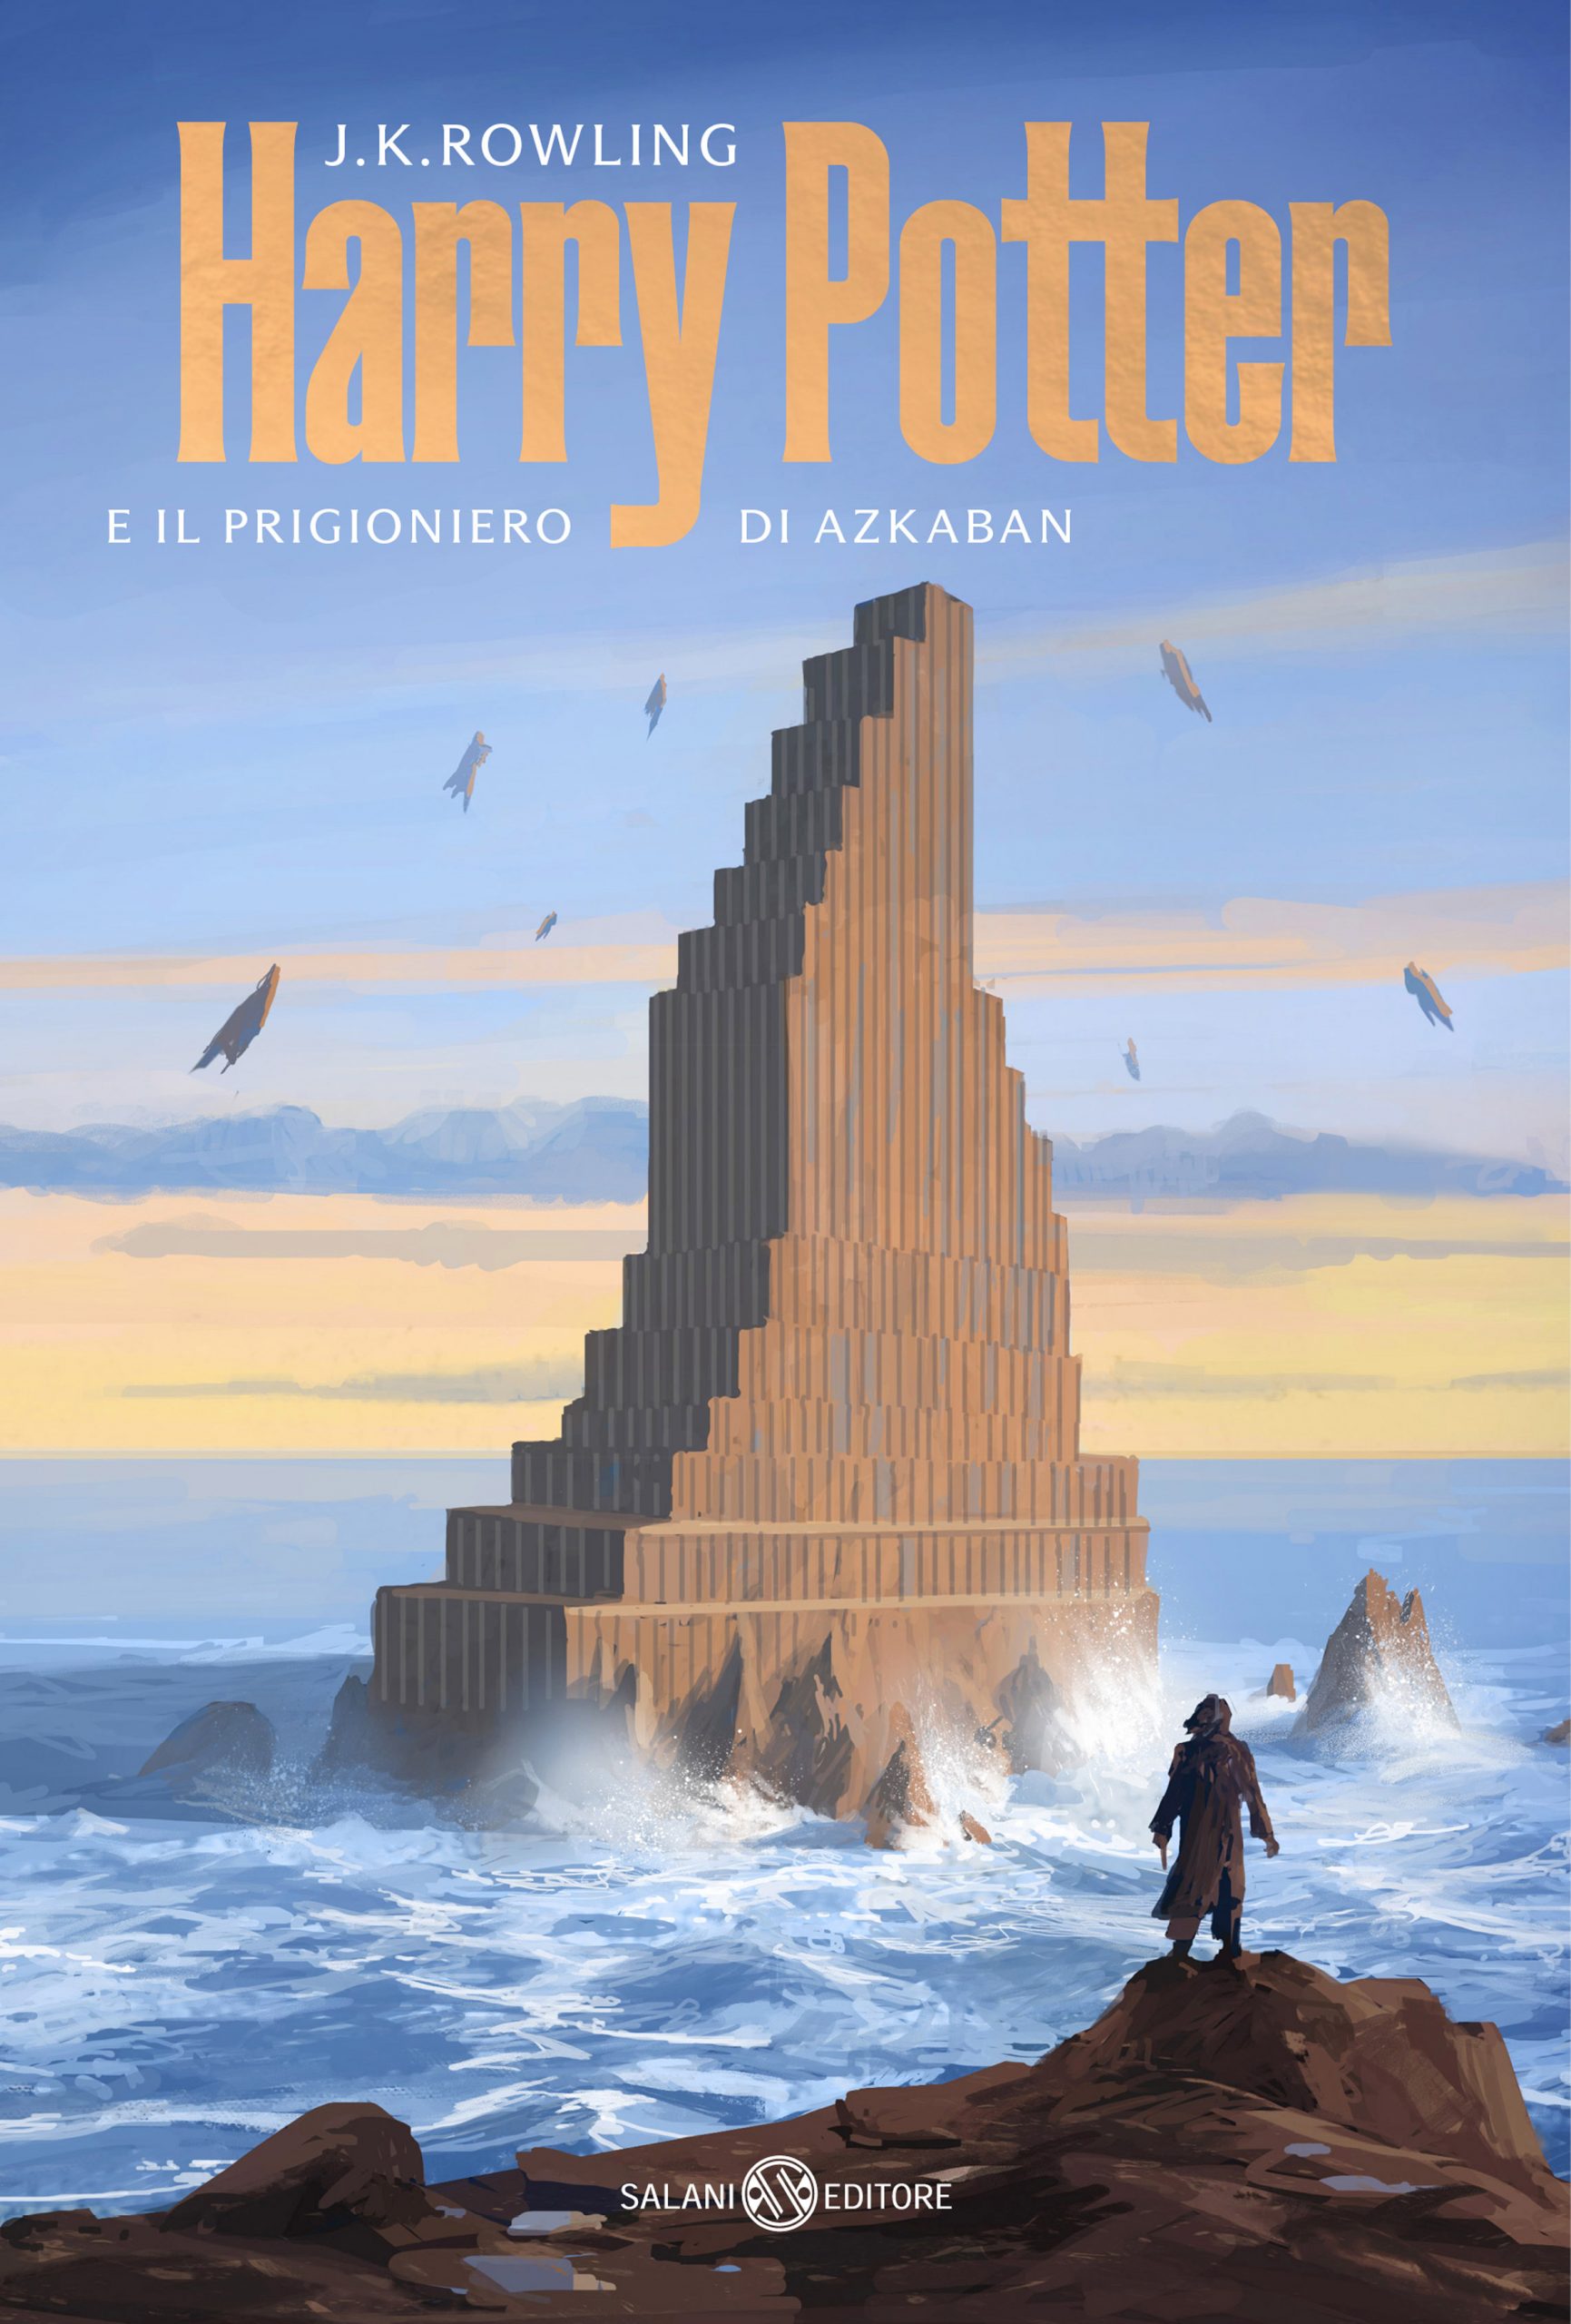 Okładki Harry’ego Pottera inspirowane architekturą